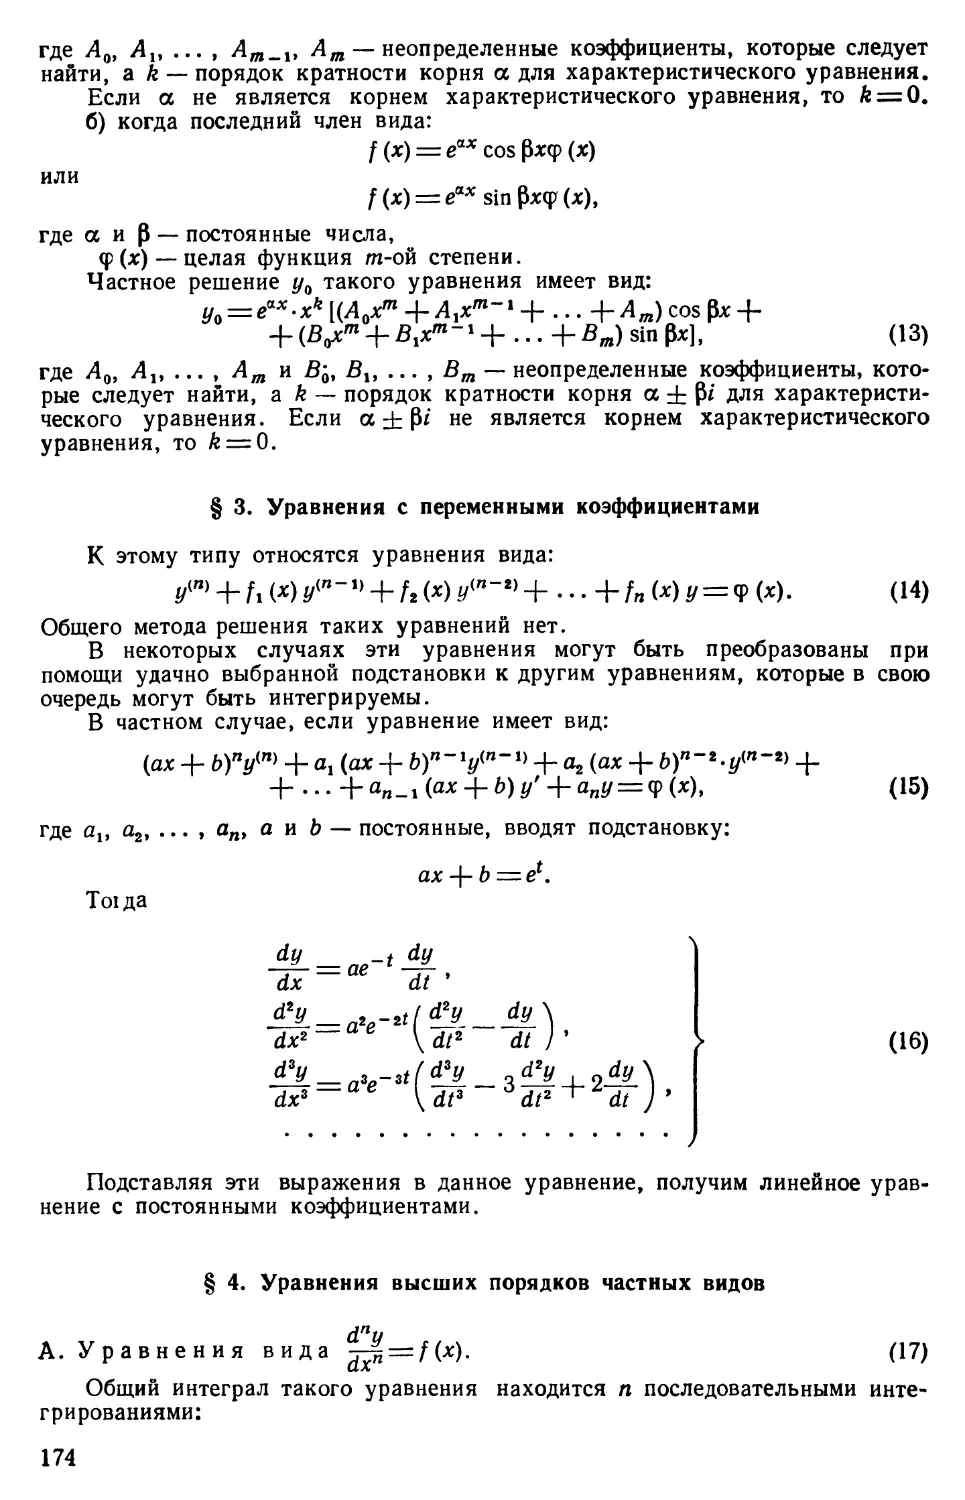 § 3. Уравнения с переменными коэффициентами
§ 4. Уравнения высших порядков частных видов